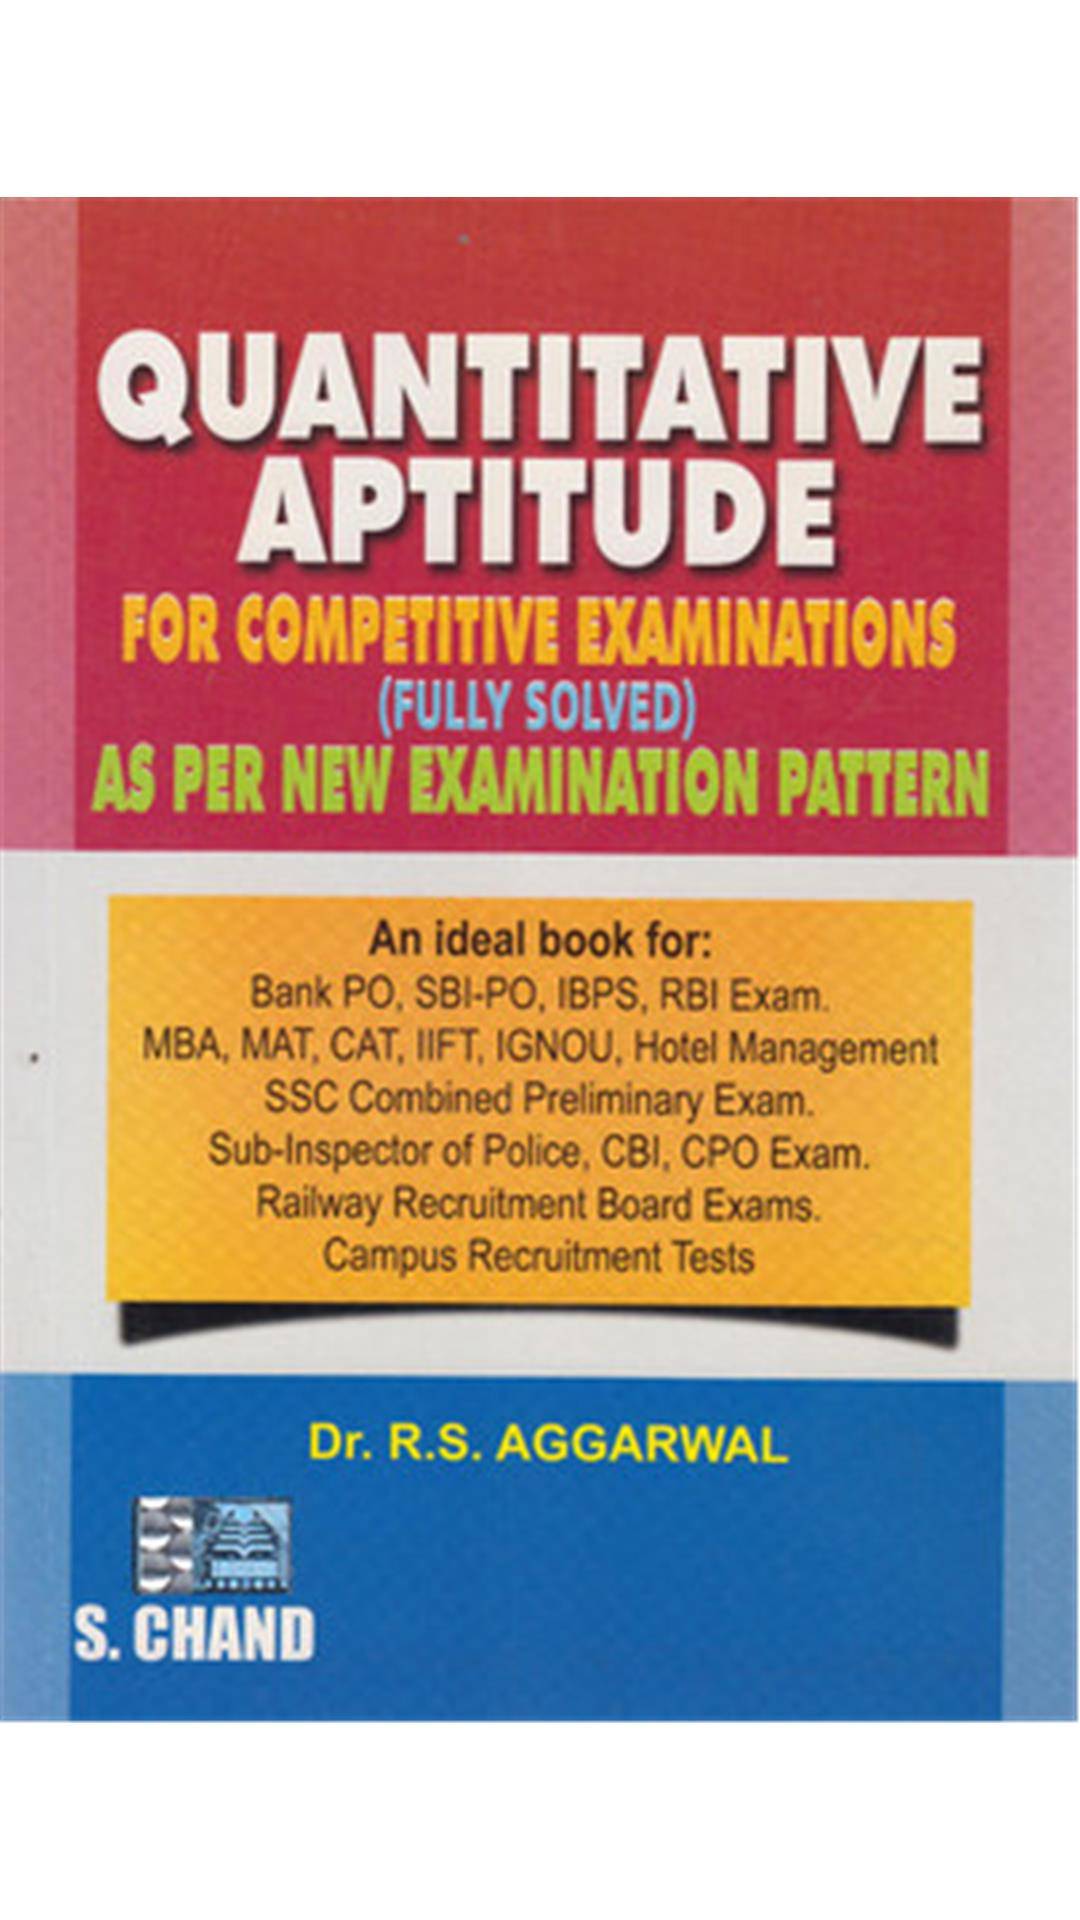 Quantitative Aptitude For Competitive Examinations For Rs 305 Paytm IndiaKaaOffer CoM